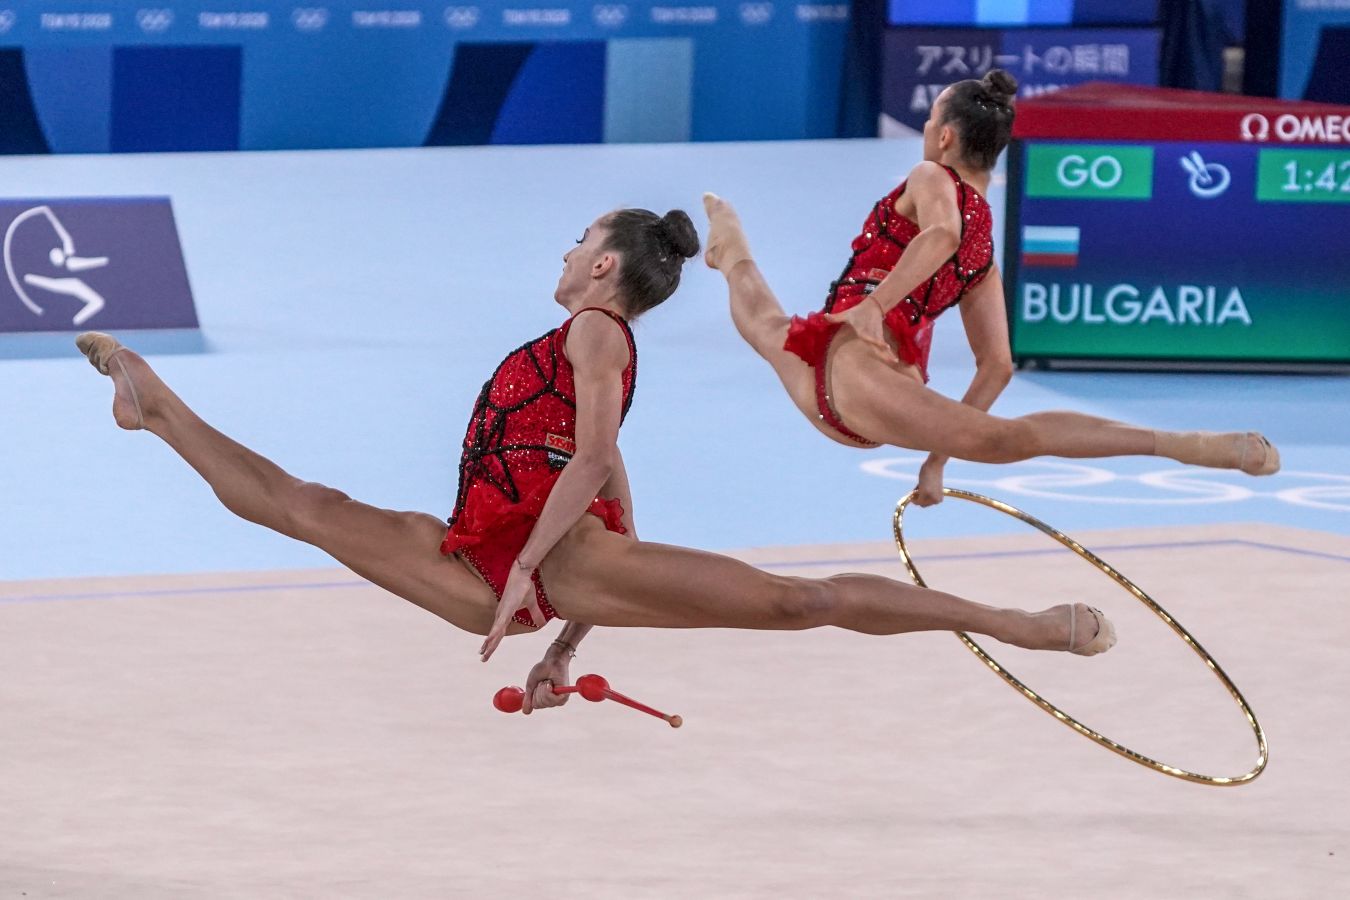 Сборная Болгарии выиграла чемпионат Европы по художественной гимнастике в  многоборье групп - Чемпионат